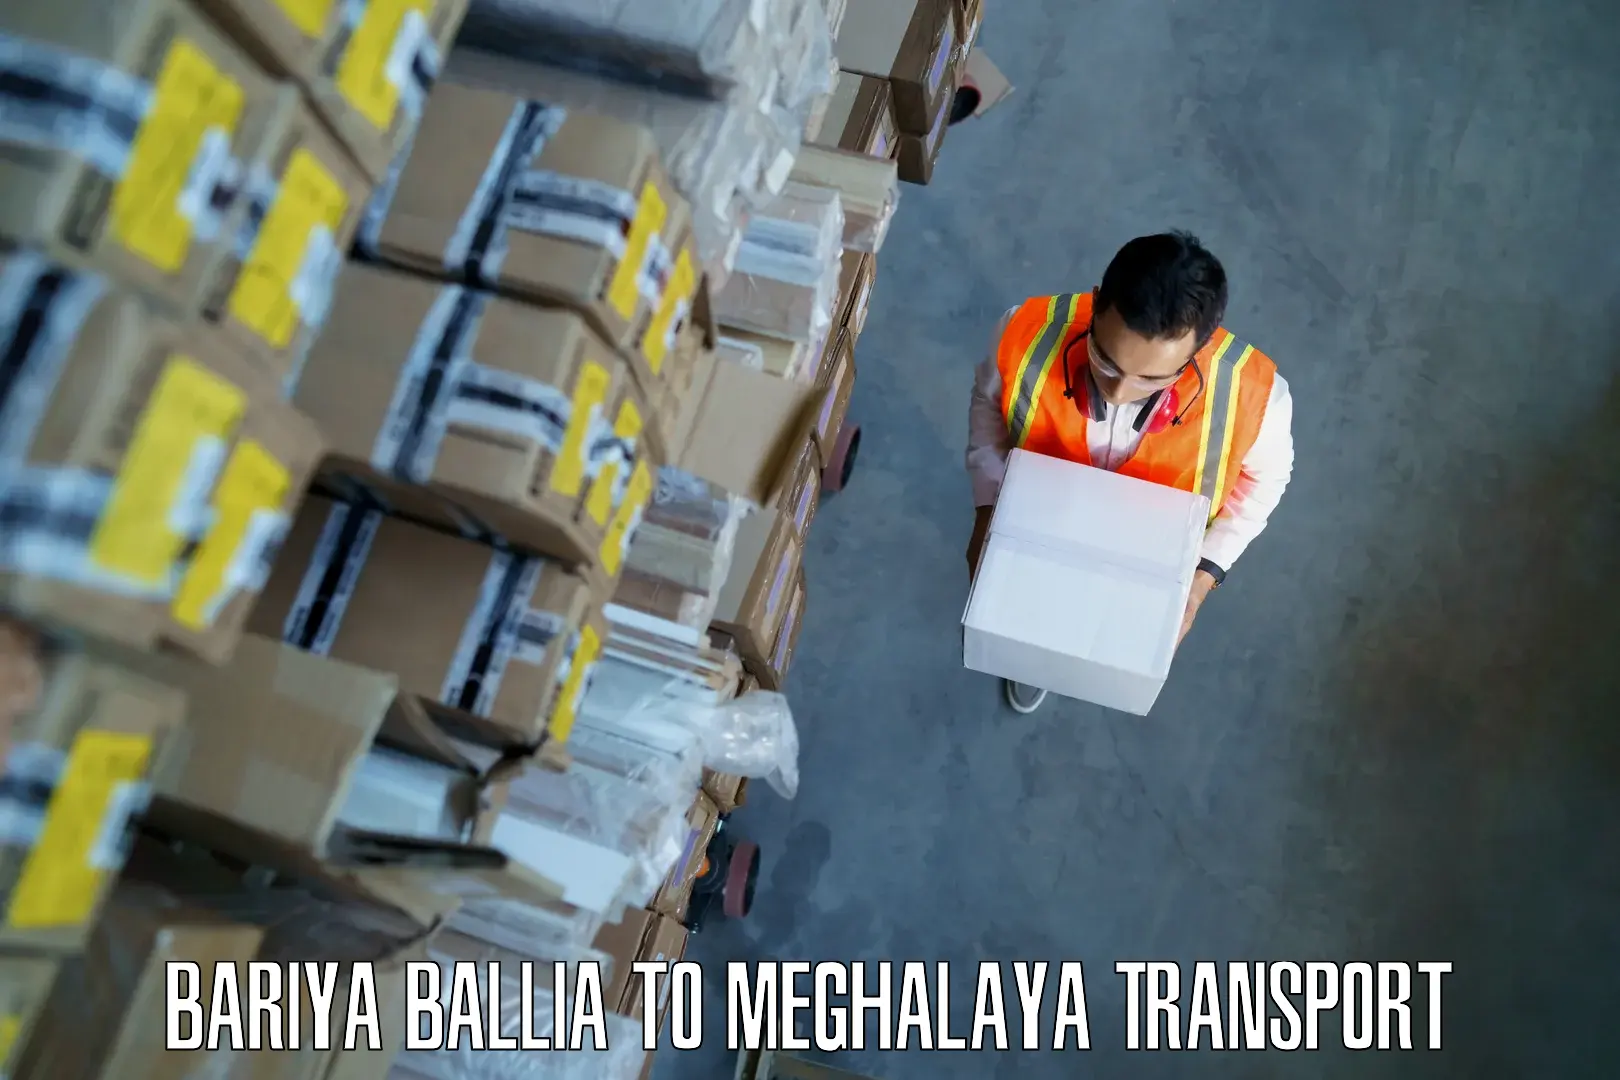 Express transport services in Bariya Ballia to NIT Meghalaya